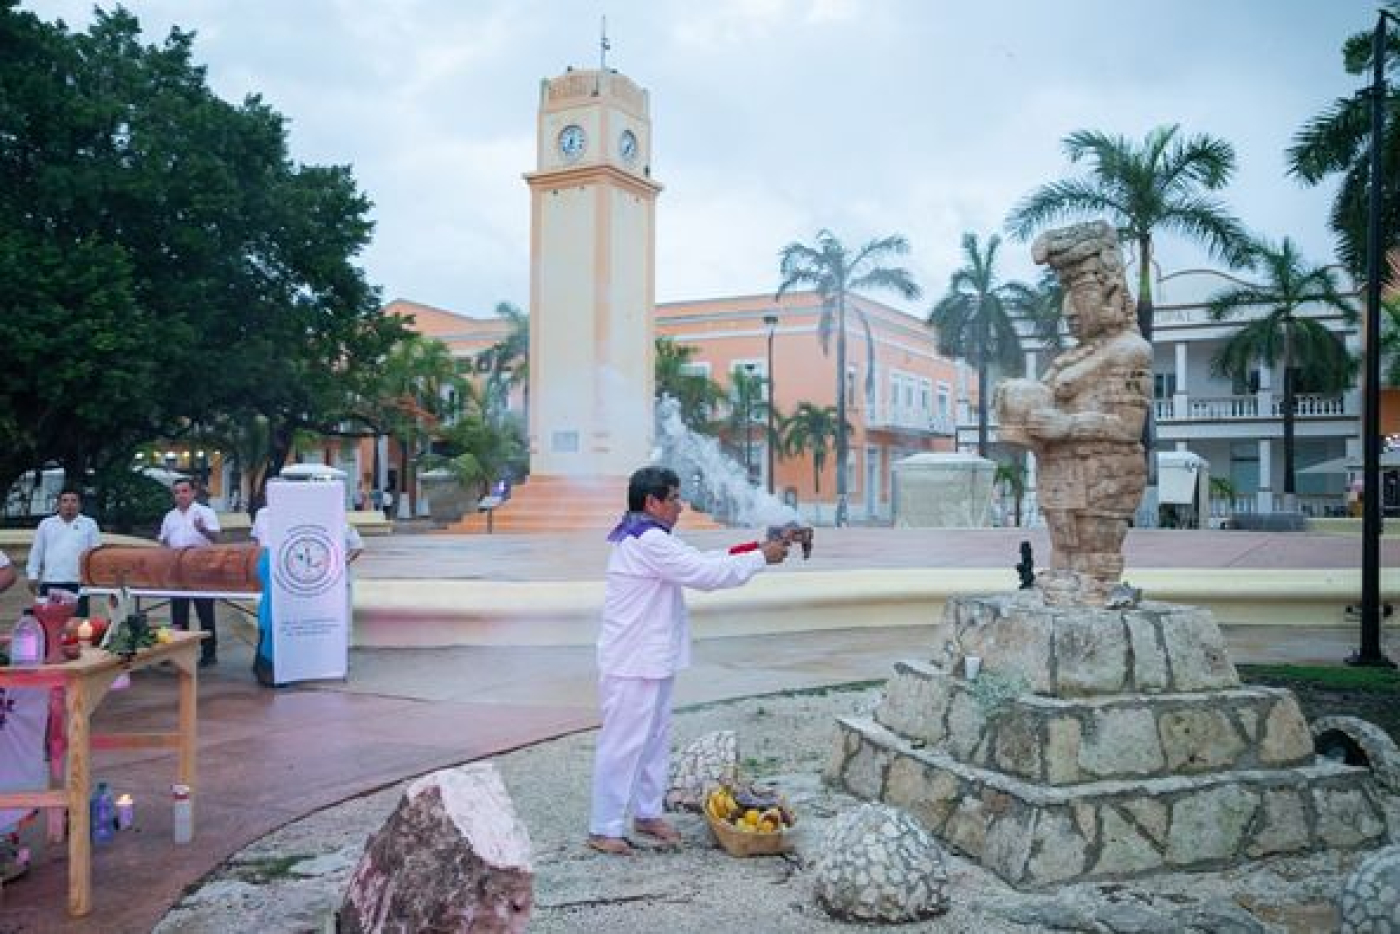 La escultura de la Diosa Ixchel en Cozumel, se consagra como un lugar de armonización